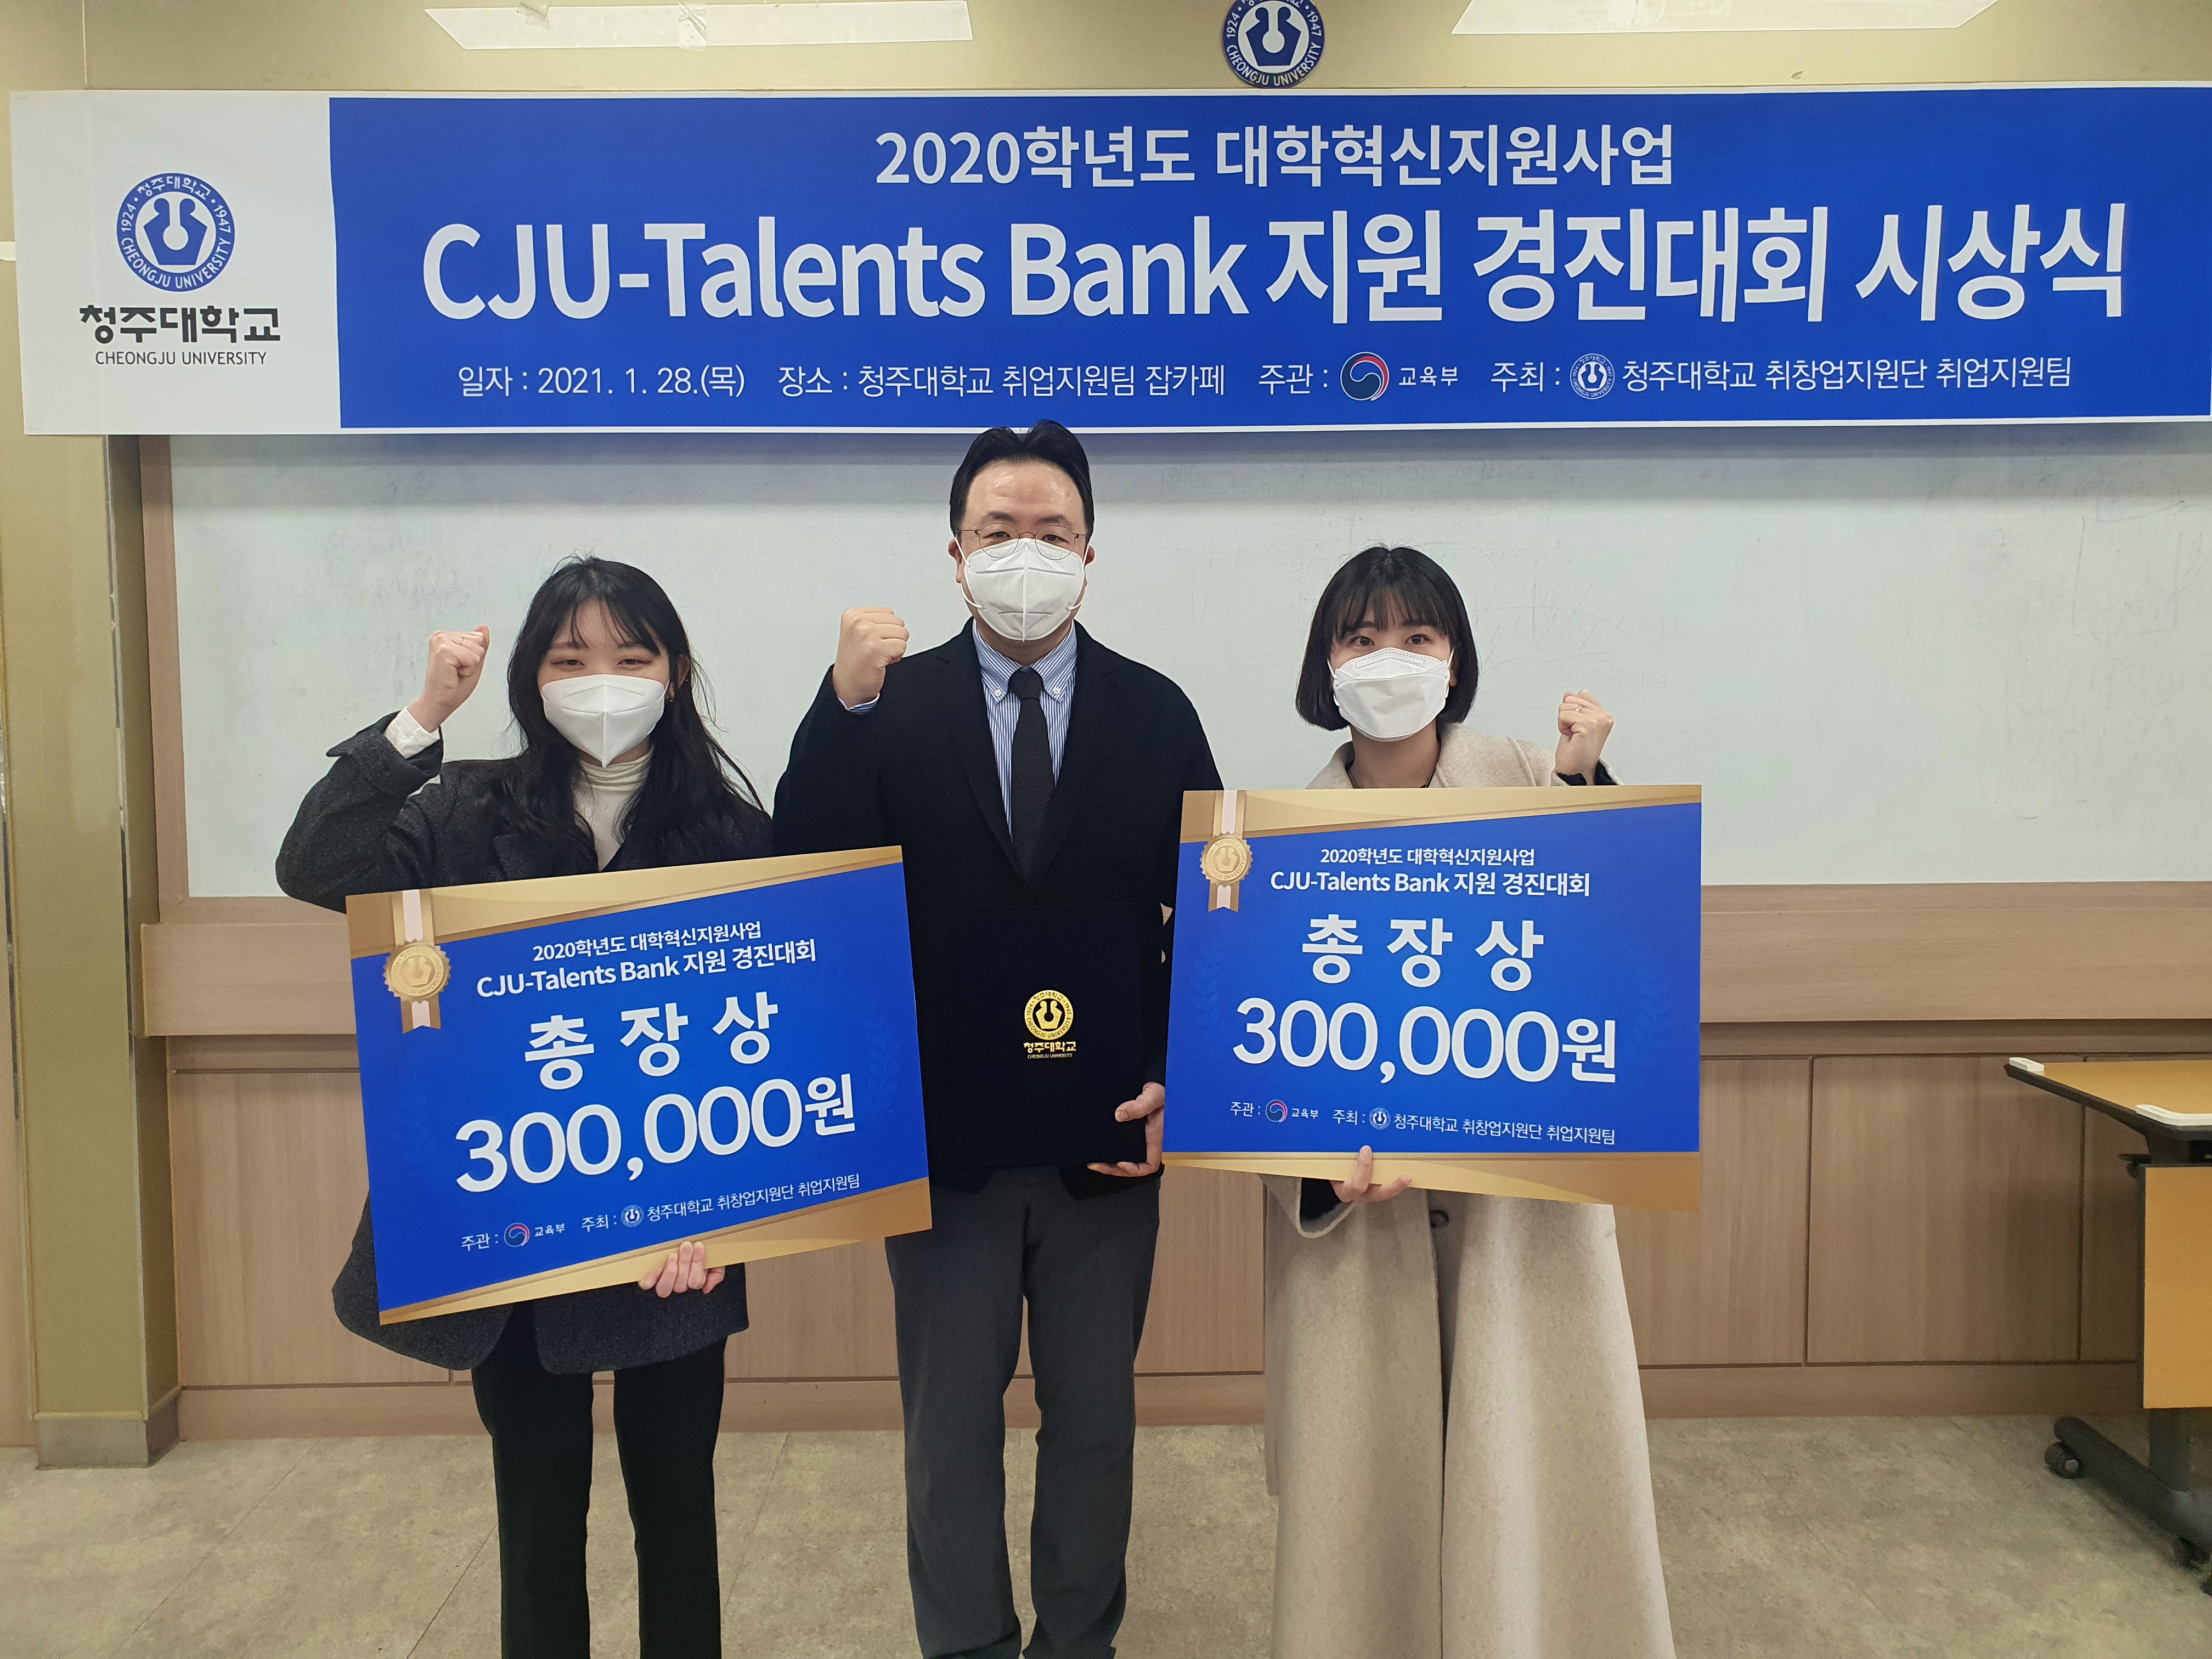 청주대학교는 28일 대학혁신지원사업의 일환으로 진행된 ‘CJU-Talents Bank 지원 경진대회’ 시상식을 개최했다.